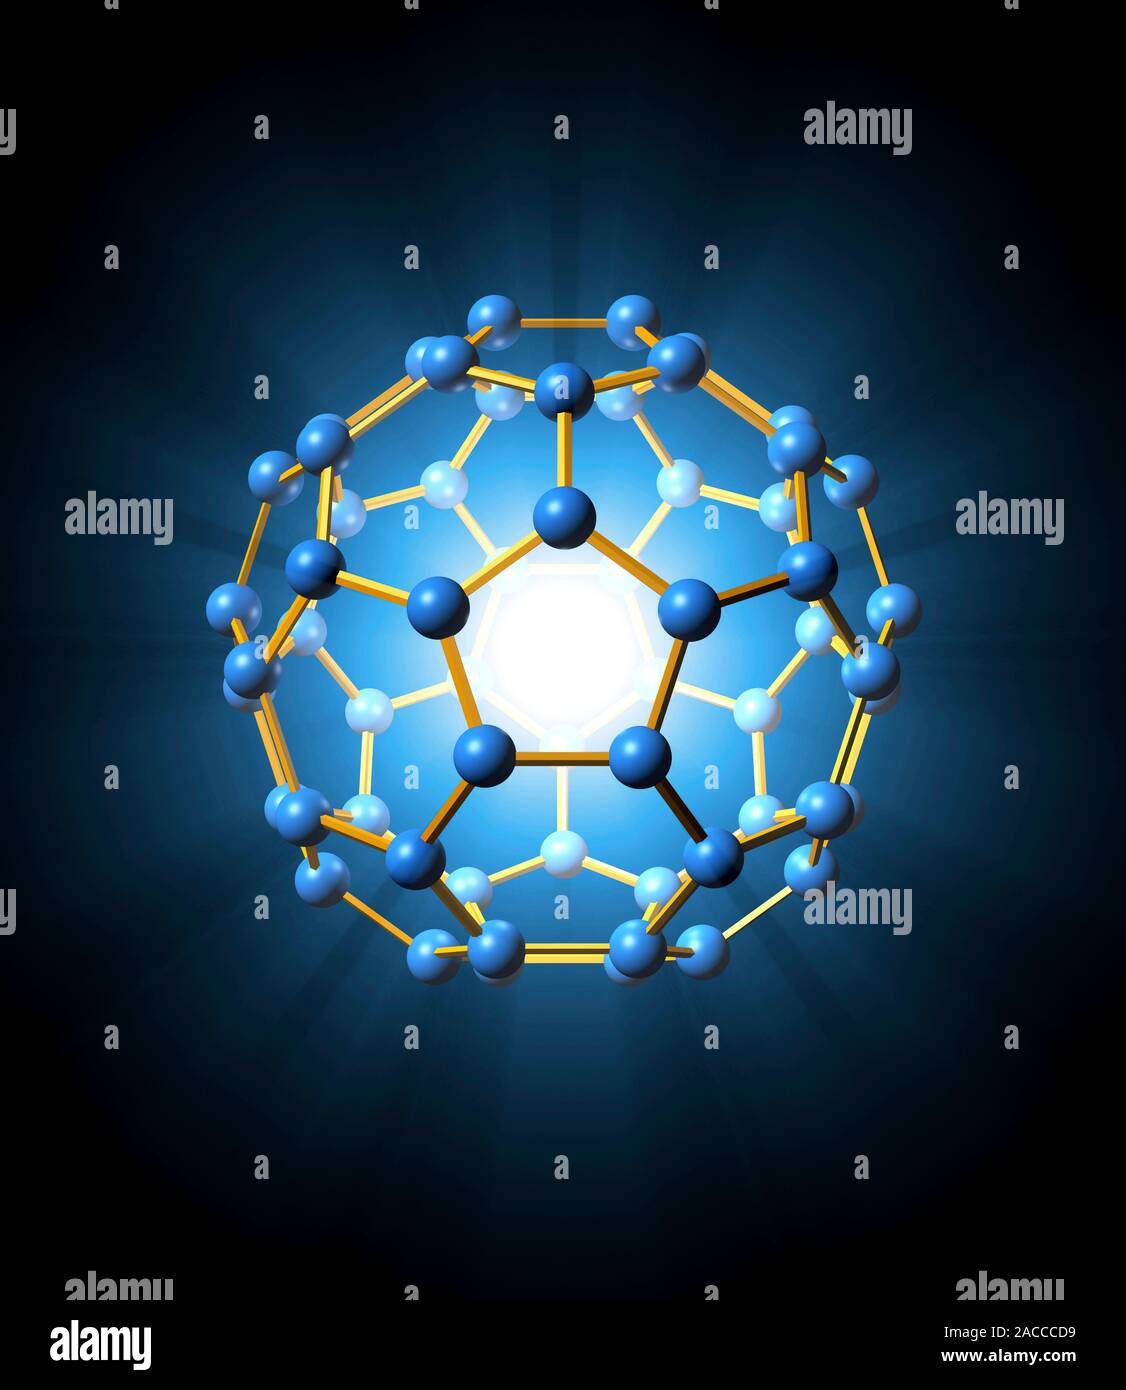 https://c8.alamy.com/compes/2acccd9/buckminsterfullereno-molecula-equipo-ilustraciones-este-es-un-tipo-de-molecula-de-fullereno-un-tipo-de-estructura-allotrope-de-carbono-tiene-60-atomos-de-carbono-2acccd9.jpg